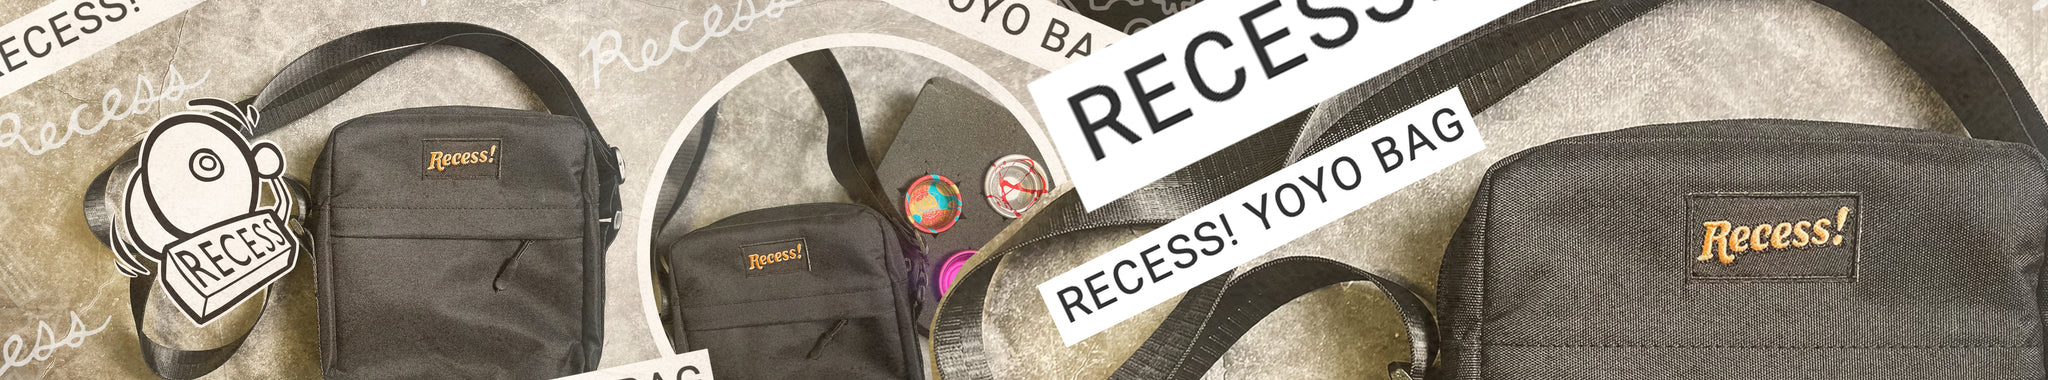 Recess Bag by Recess